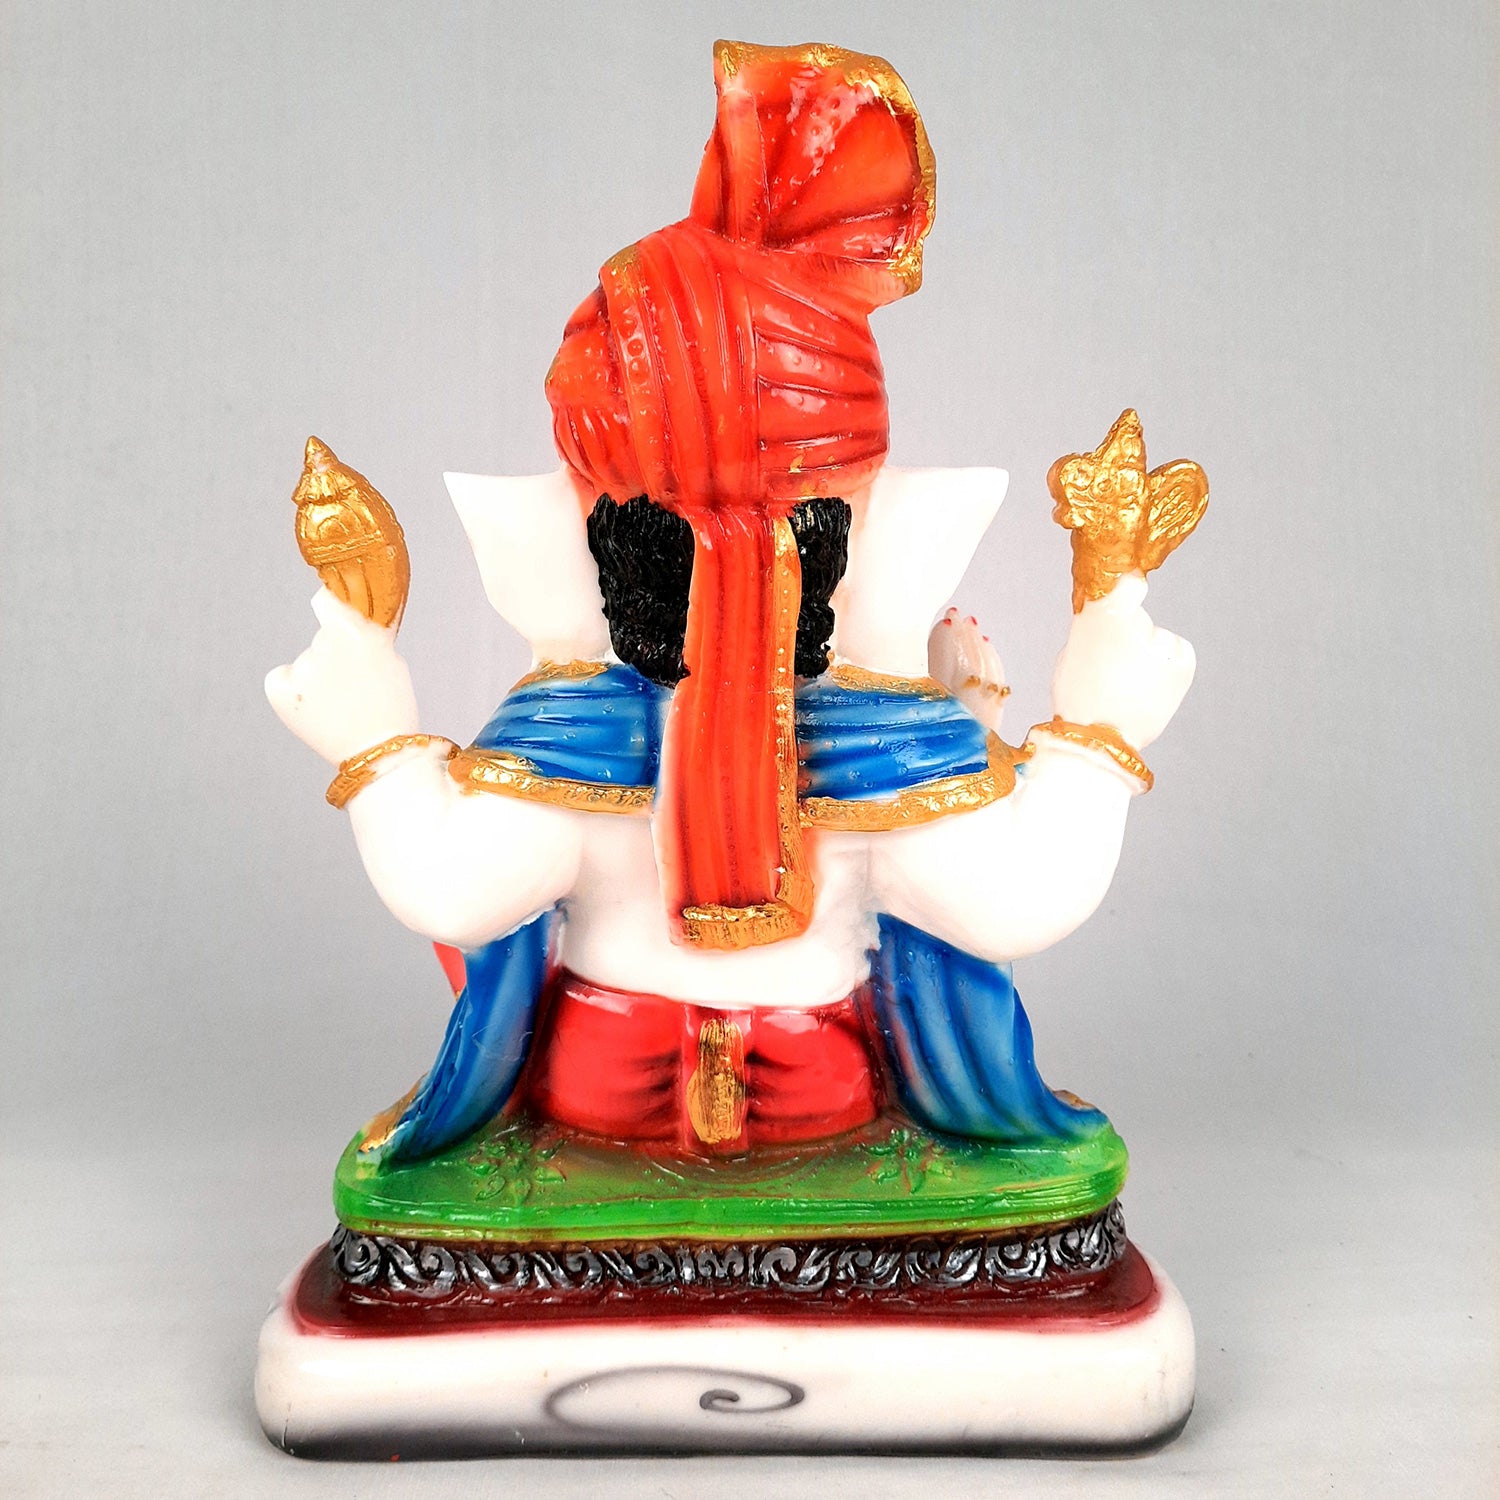 Ganesh Idol | Ganesha Statue Wearing Pagdi Design - for Pooja, Home & Table Decor | Ganpati Murti for Office Desk, Car Dashboard - 11 Inch - Apkamart